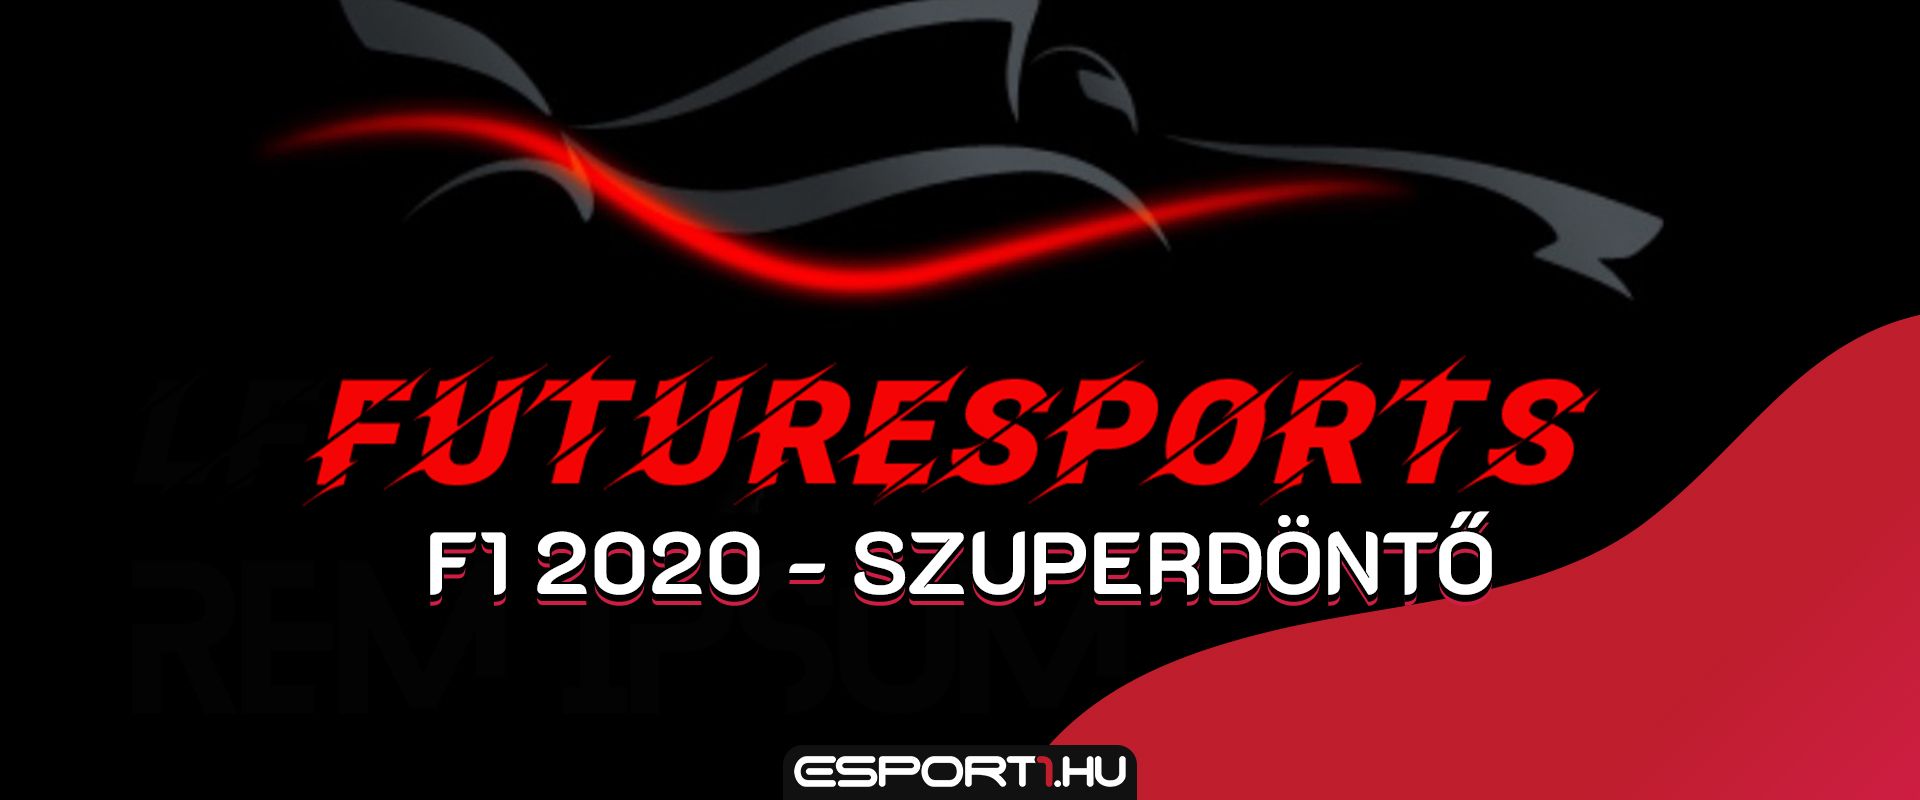 F1 2020: Ma este rendezik FuturEsportS kupa Szuperdöntőt